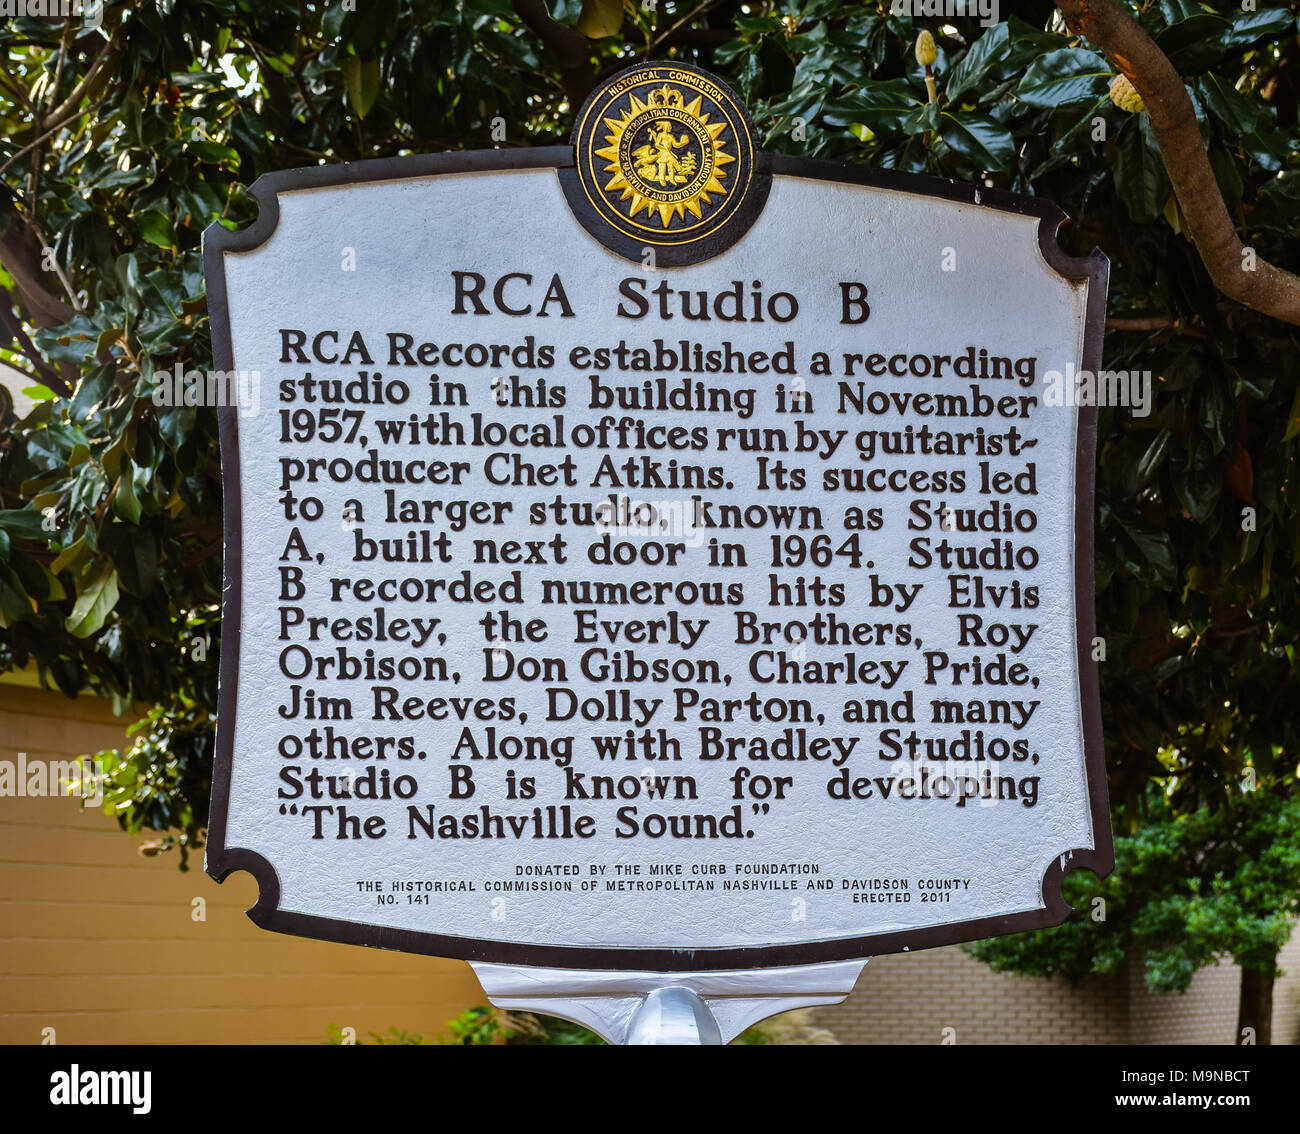 Marker descrive la storia di RCA Studio B, una volta che la registrazione home di musica popolare titans come Elvis Presley, Chet Atkins, Eddy Arnold, ecc. Foto Stock